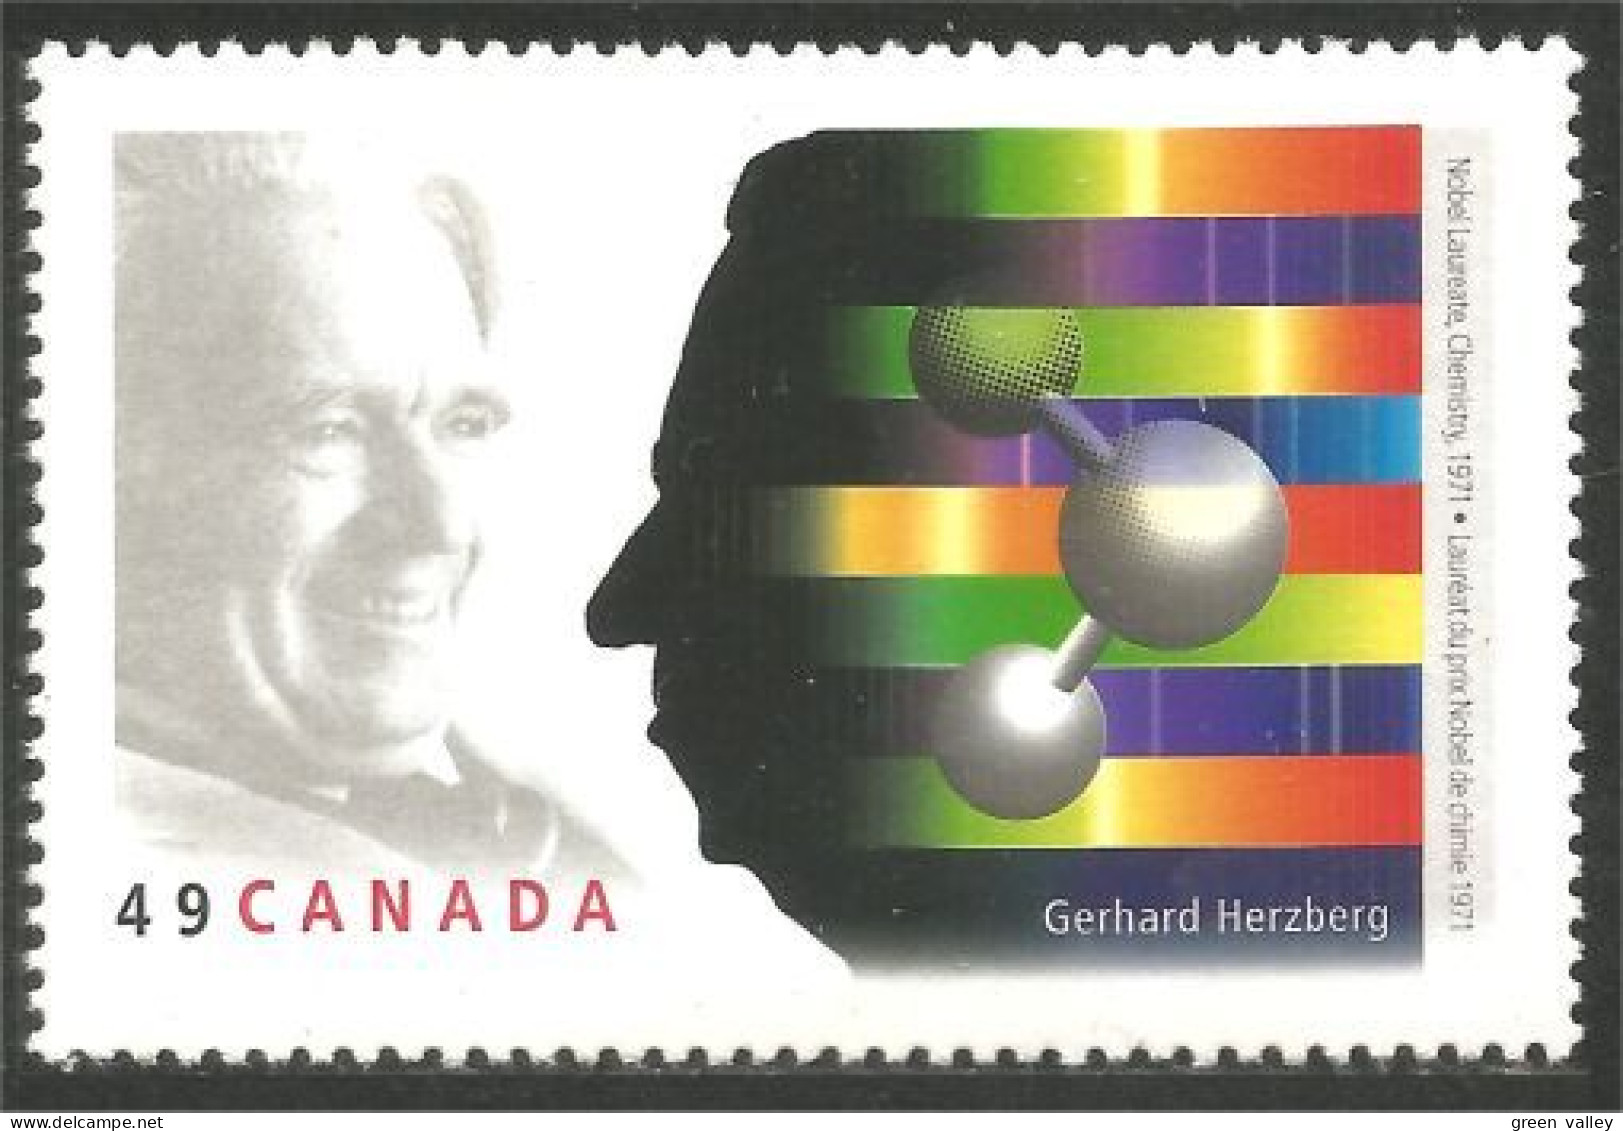 Canada Gerhard Herzberg Prix Nobel Prize Chimie Chemistry MNH ** Neuf SC (C20-61b) - Prix Nobel